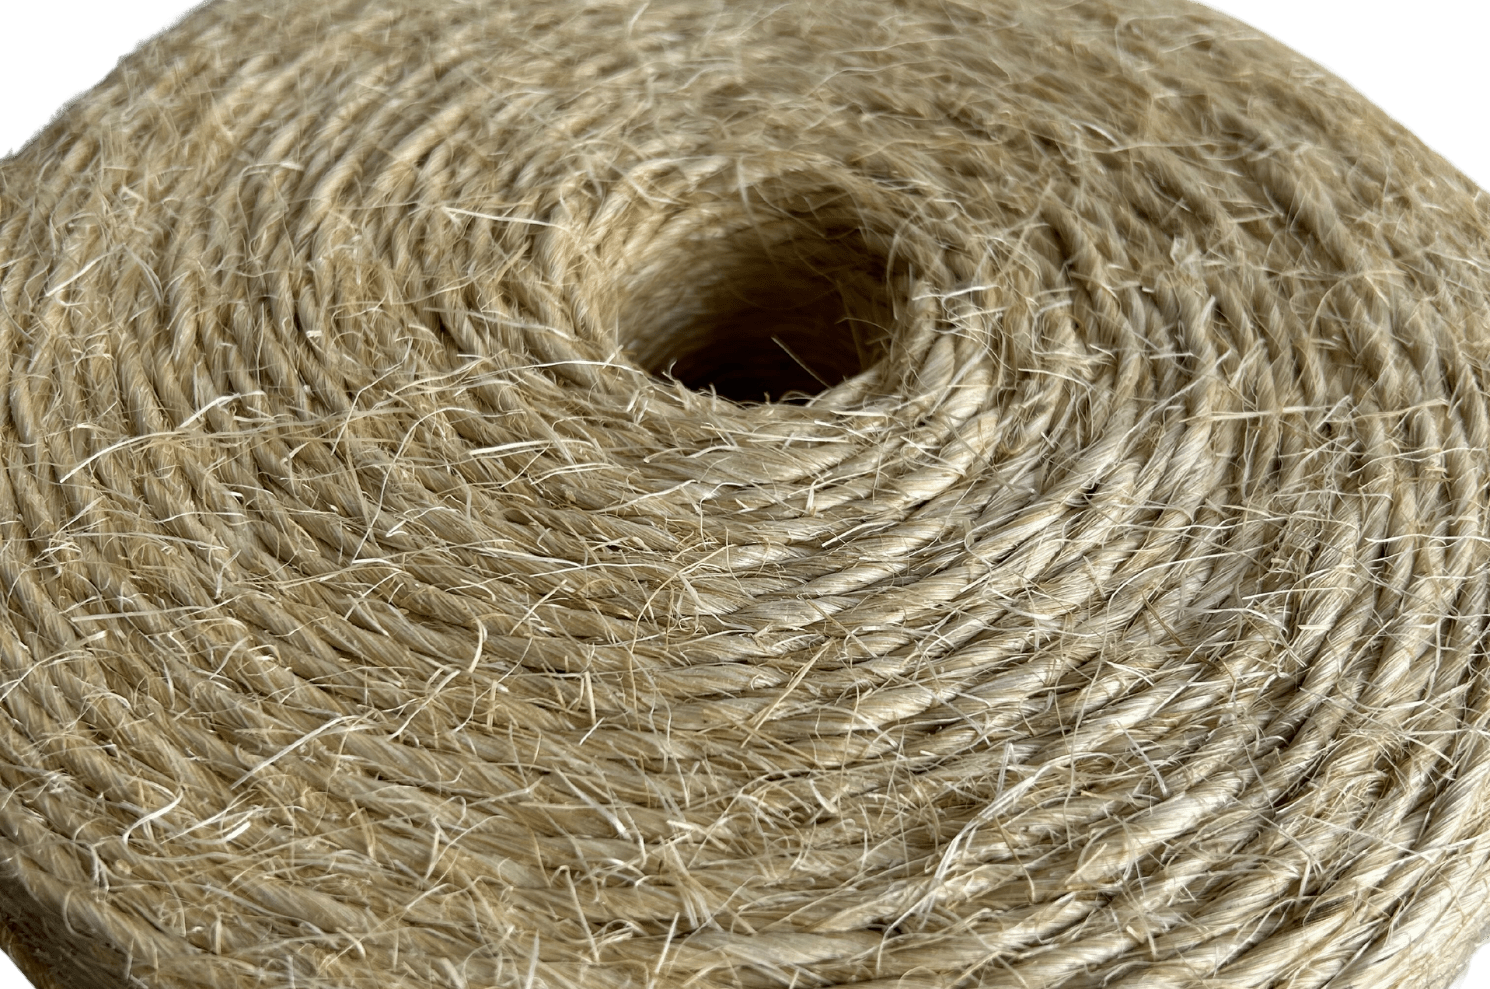 Ficelle agricole en Sisal (fibres naturelles) - La Croix Noble